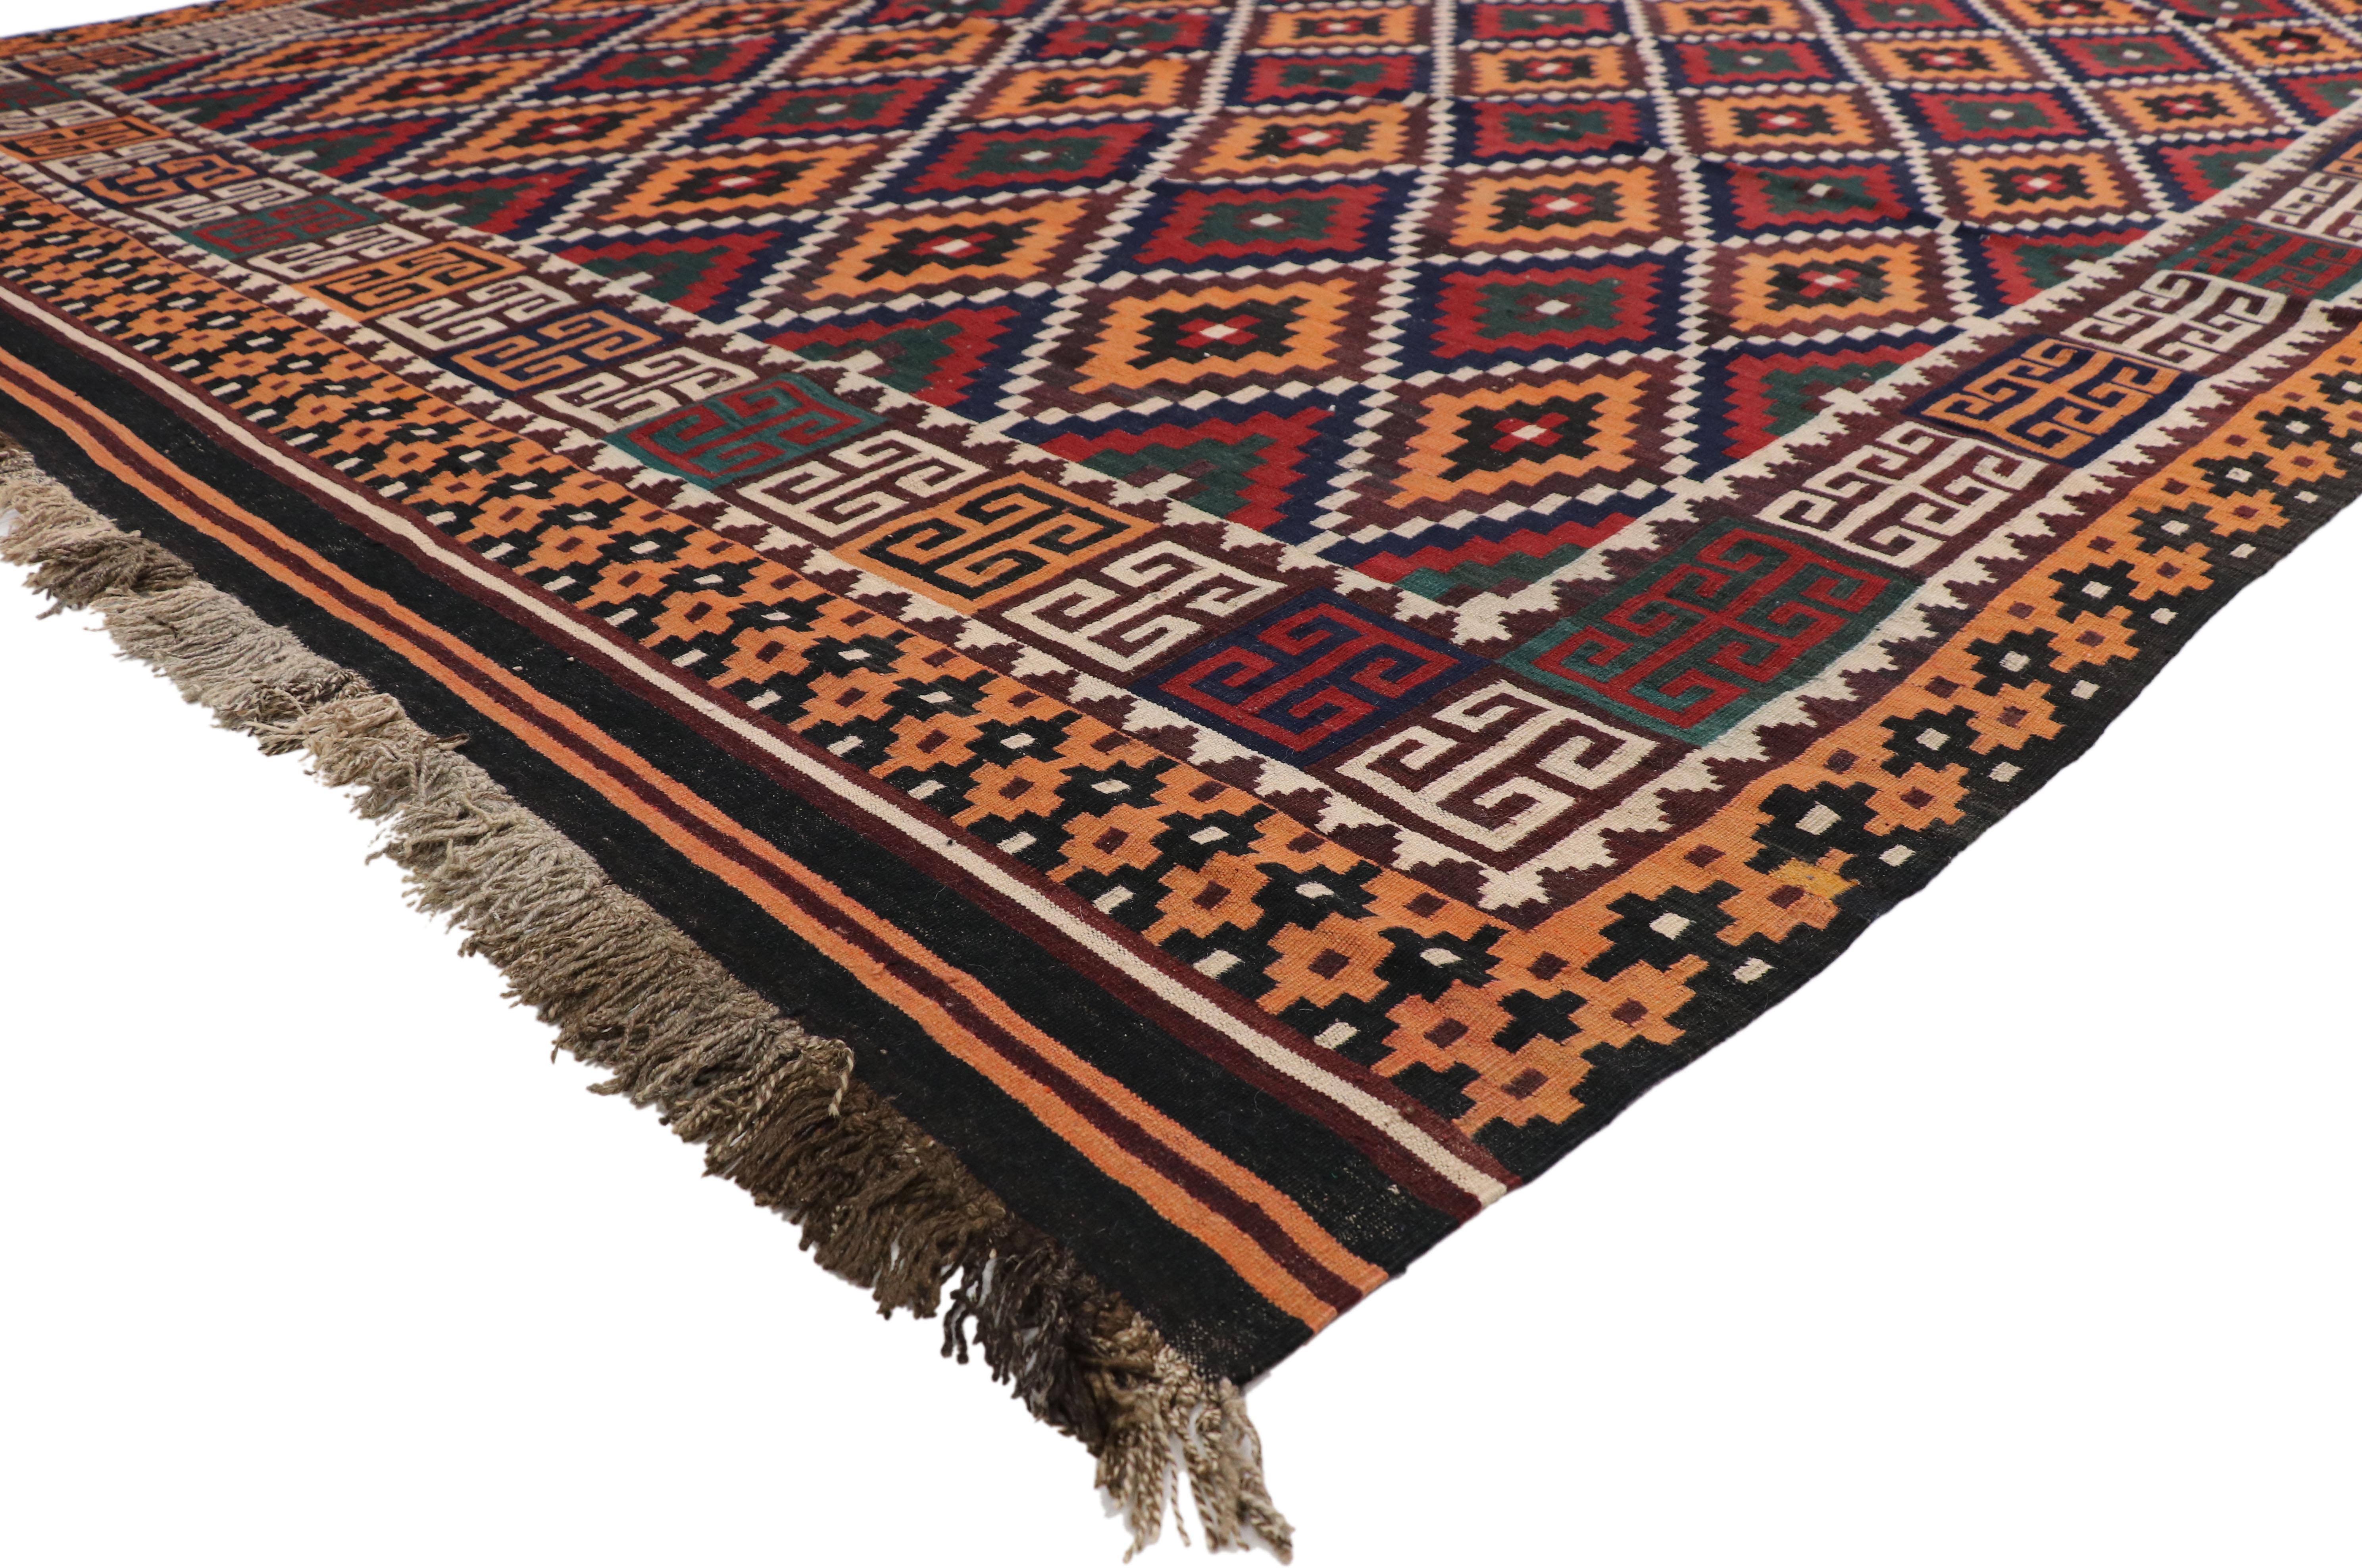 74277, tapis afghan vintage Ghalmouri Maimana Kilim de style tribal nomade. Mettant en valeur le charme nomade et les vibrations tribales, ce tapis Ghalmouri Maimana Kilim vintage afghan en laine tissée à la main met magnifiquement en valeur le